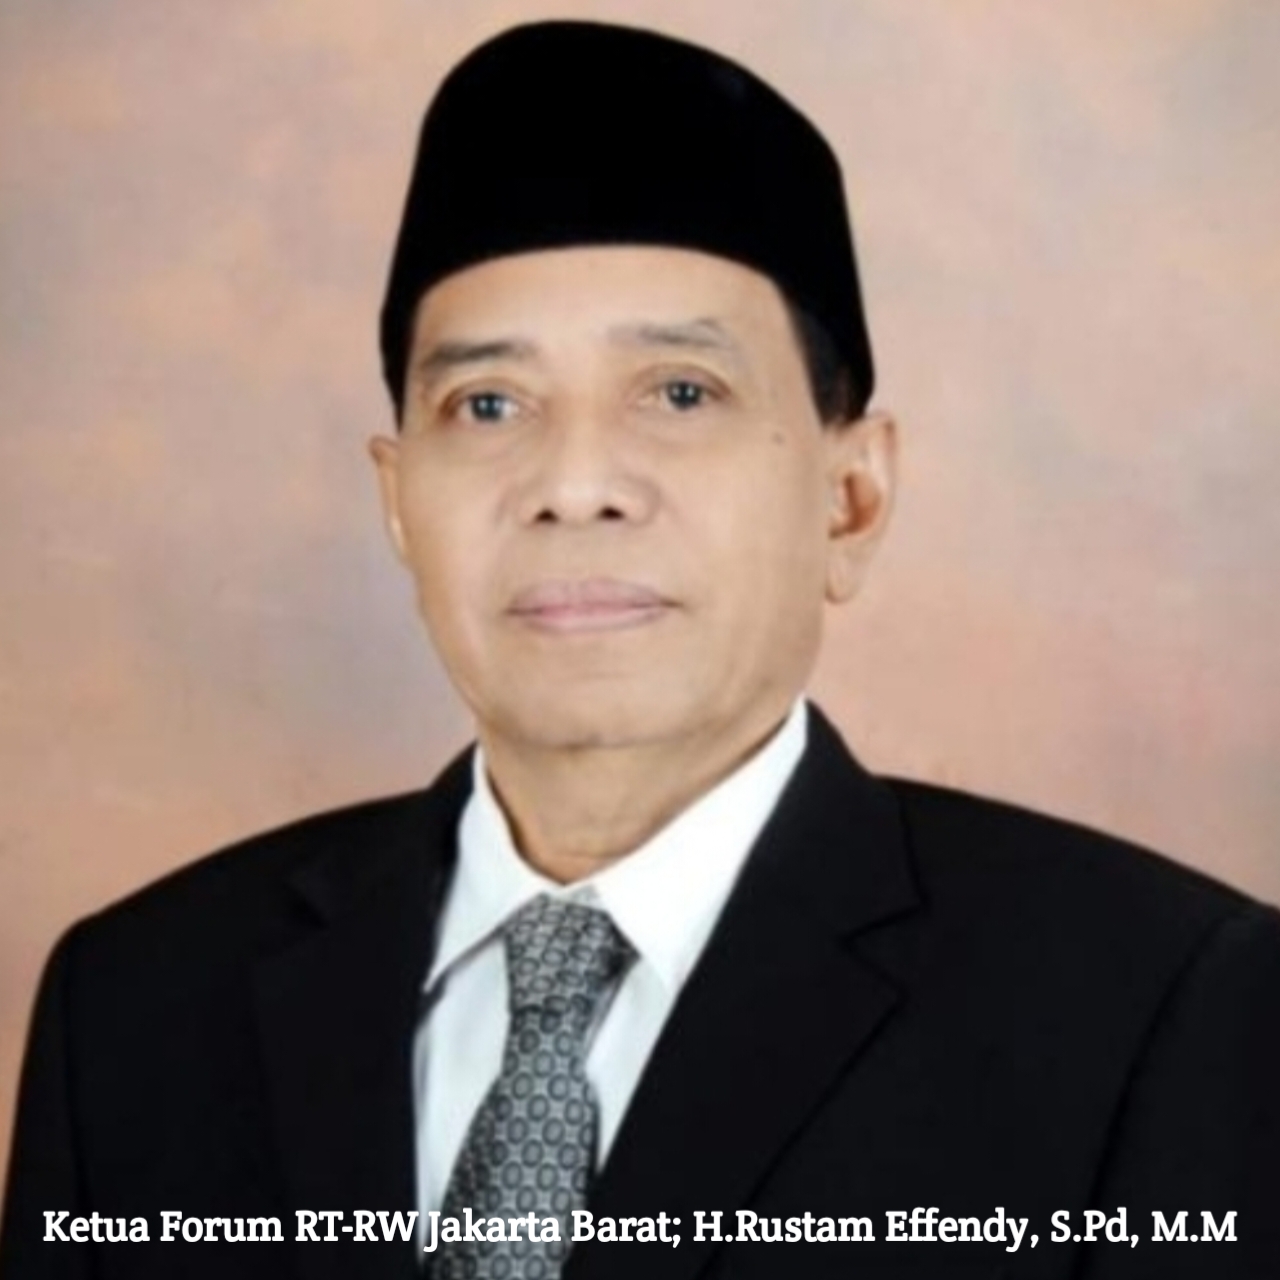 Caleg DPRD DKI Jakarta H. Rustam Efendi dapil 9 partai NasDem masih menjabat sebagai ketua RW dan Forum RT/RW Jakarta Barat  (Poto:Istimewa)